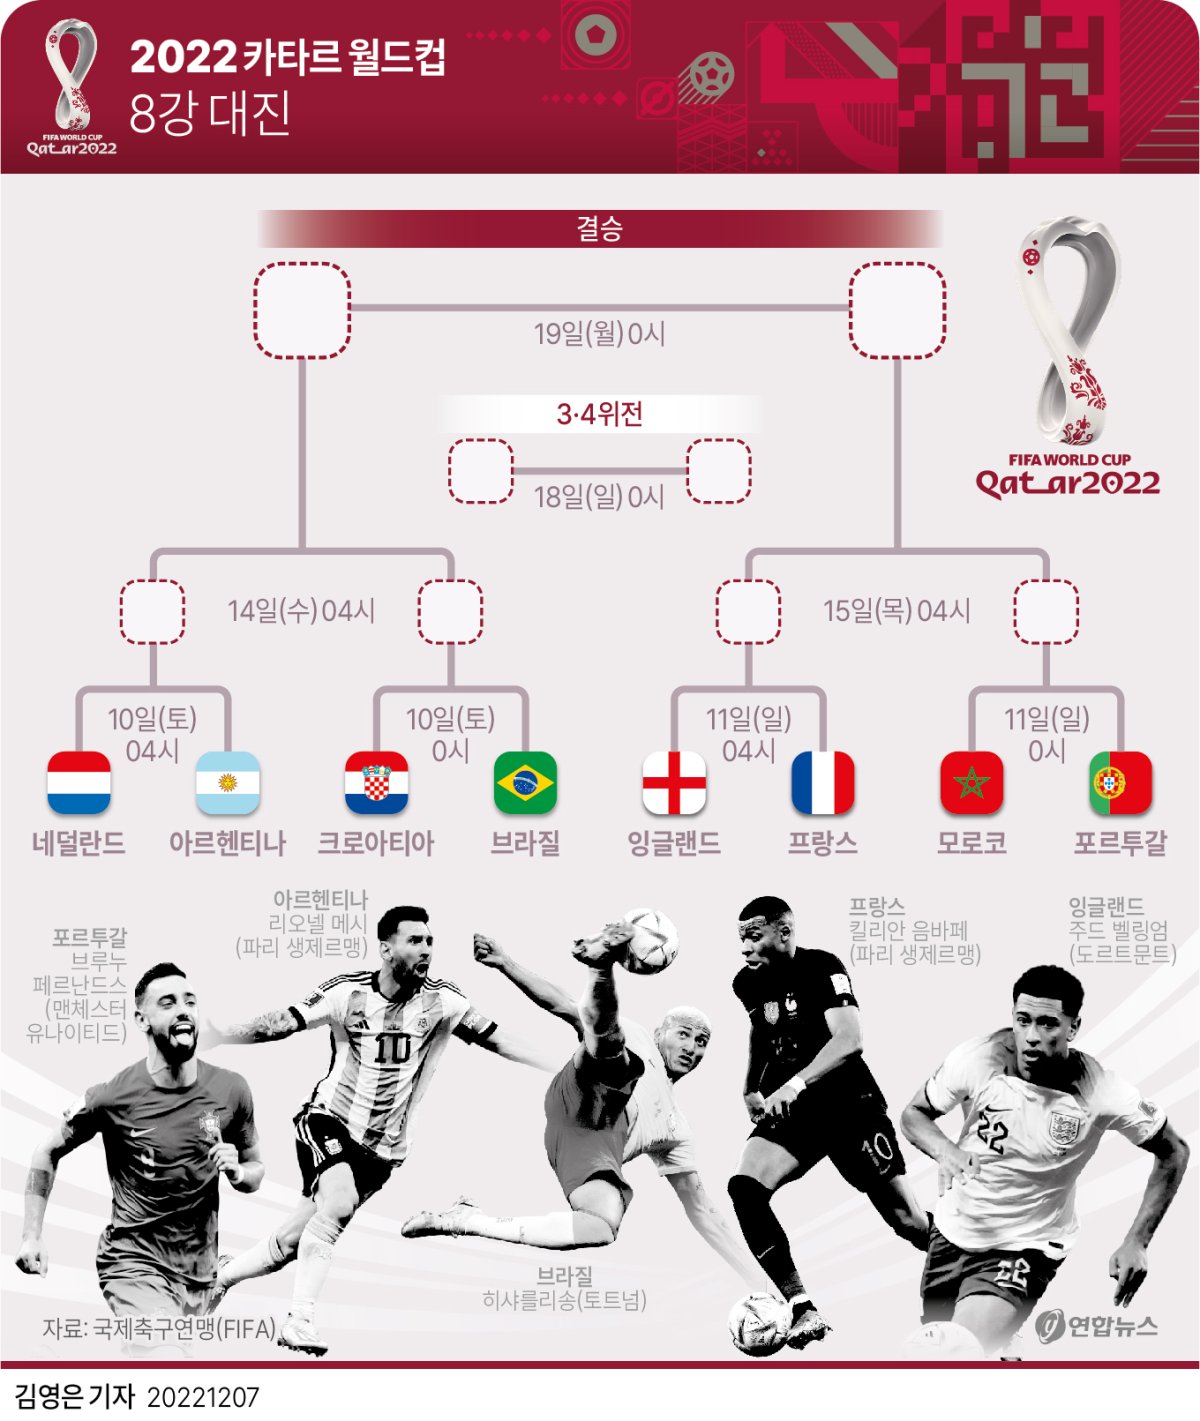 [그래픽] 2022 카타르 월드컵 8강 대진